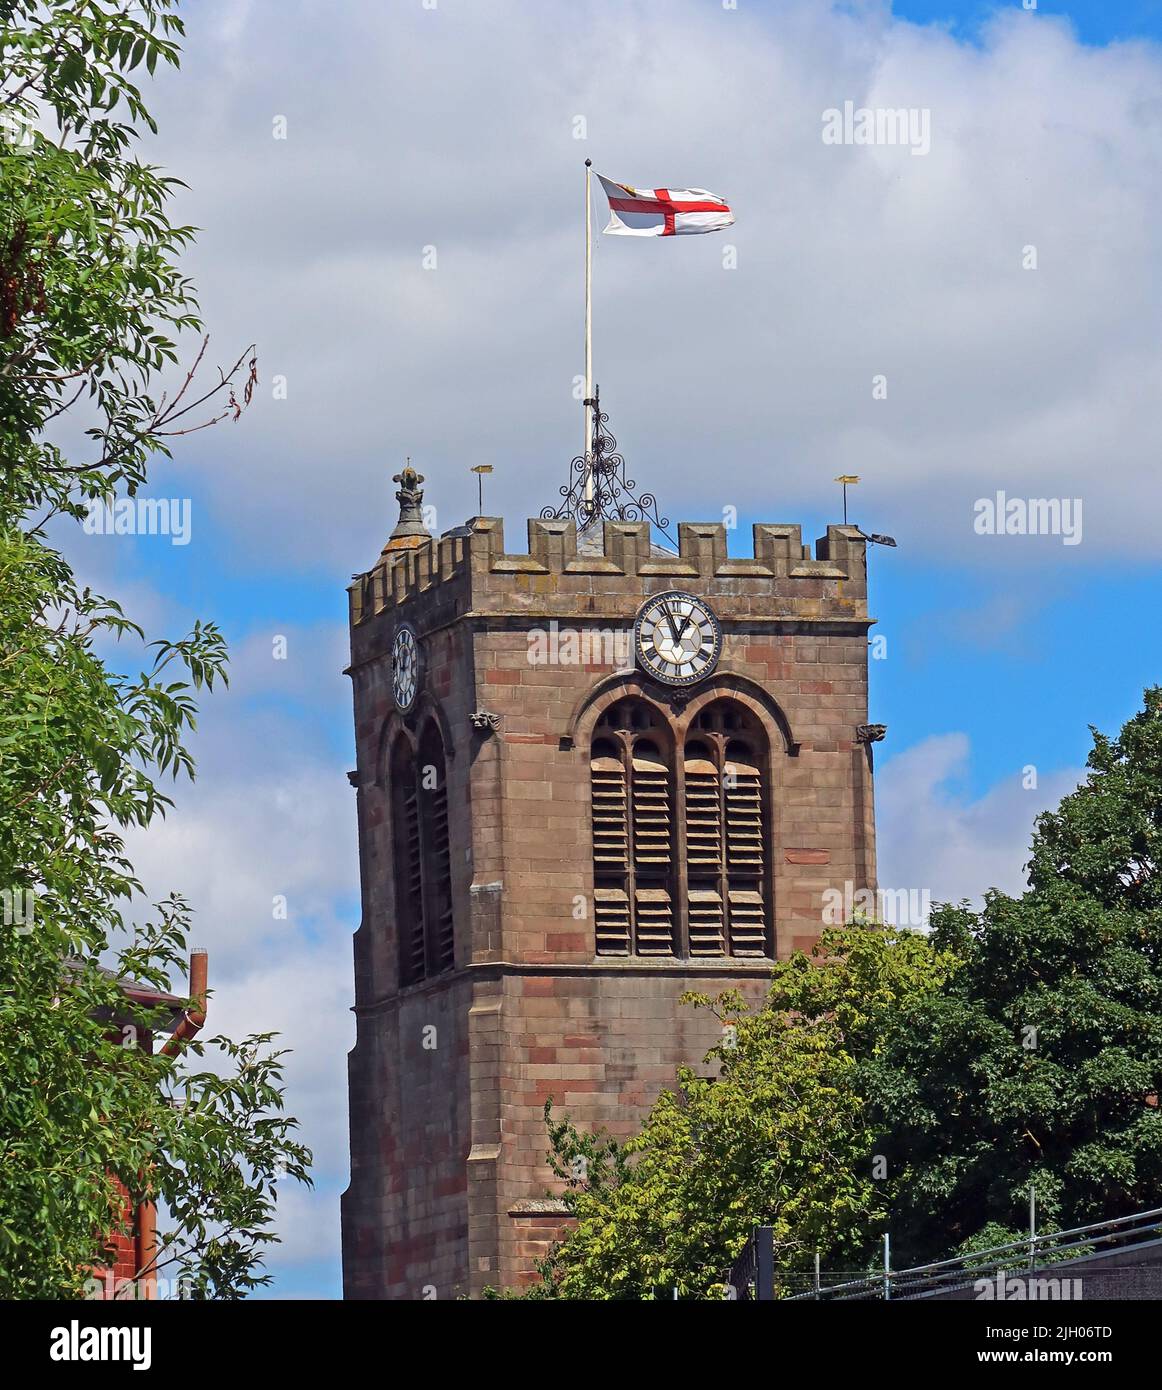 Tour et horloge de l'église Sainte-Marie-la-Vierge, drapeau Saint-Georges volant - St Mary's Way, Leigh, Lancs, Angleterre, Royaume-Uni, WN7 5EQ Banque D'Images